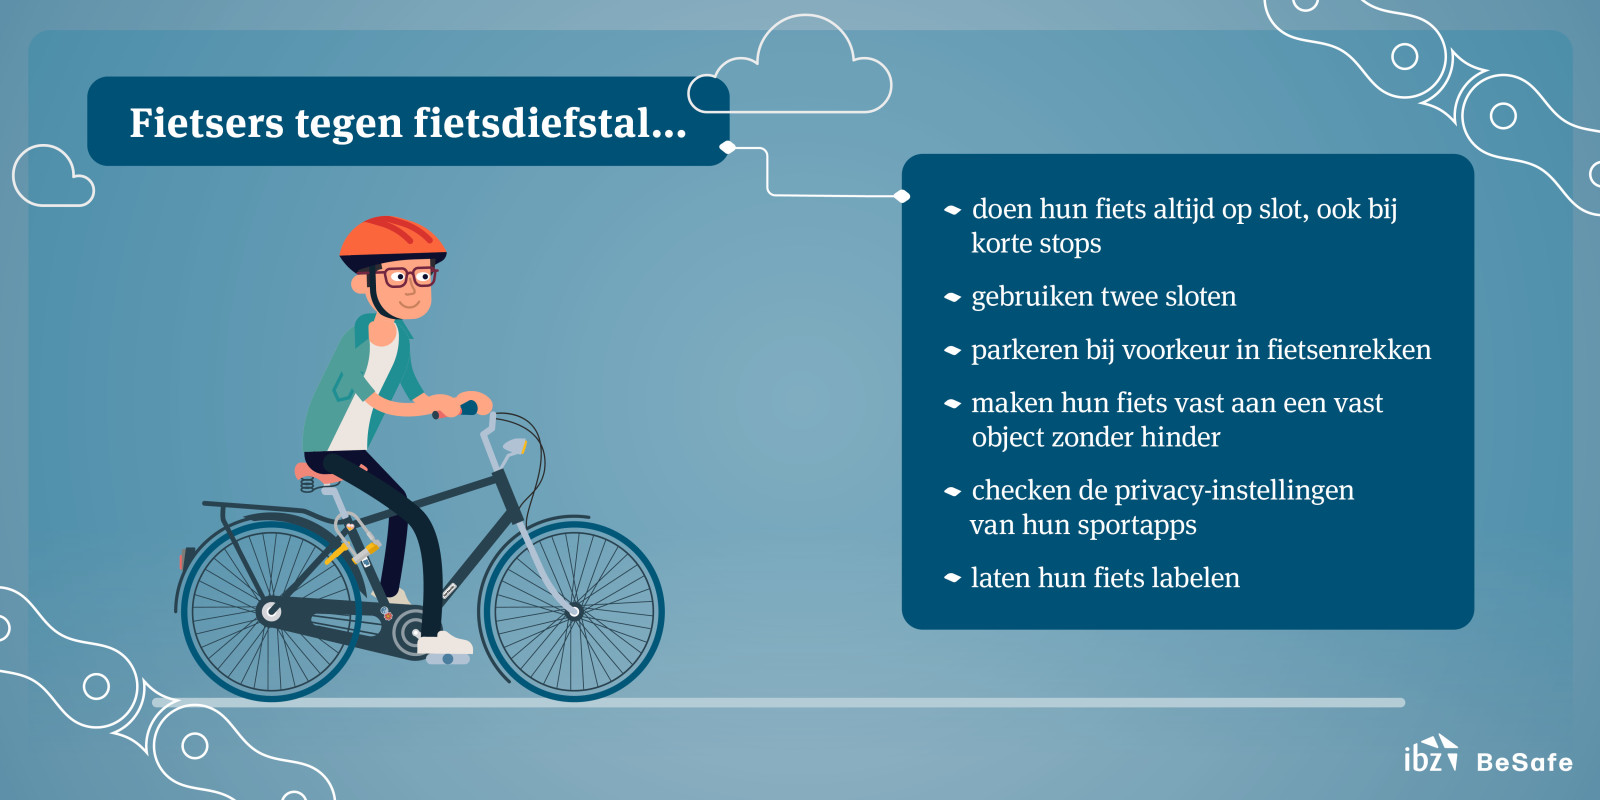 visual fietsdiefstal met tips